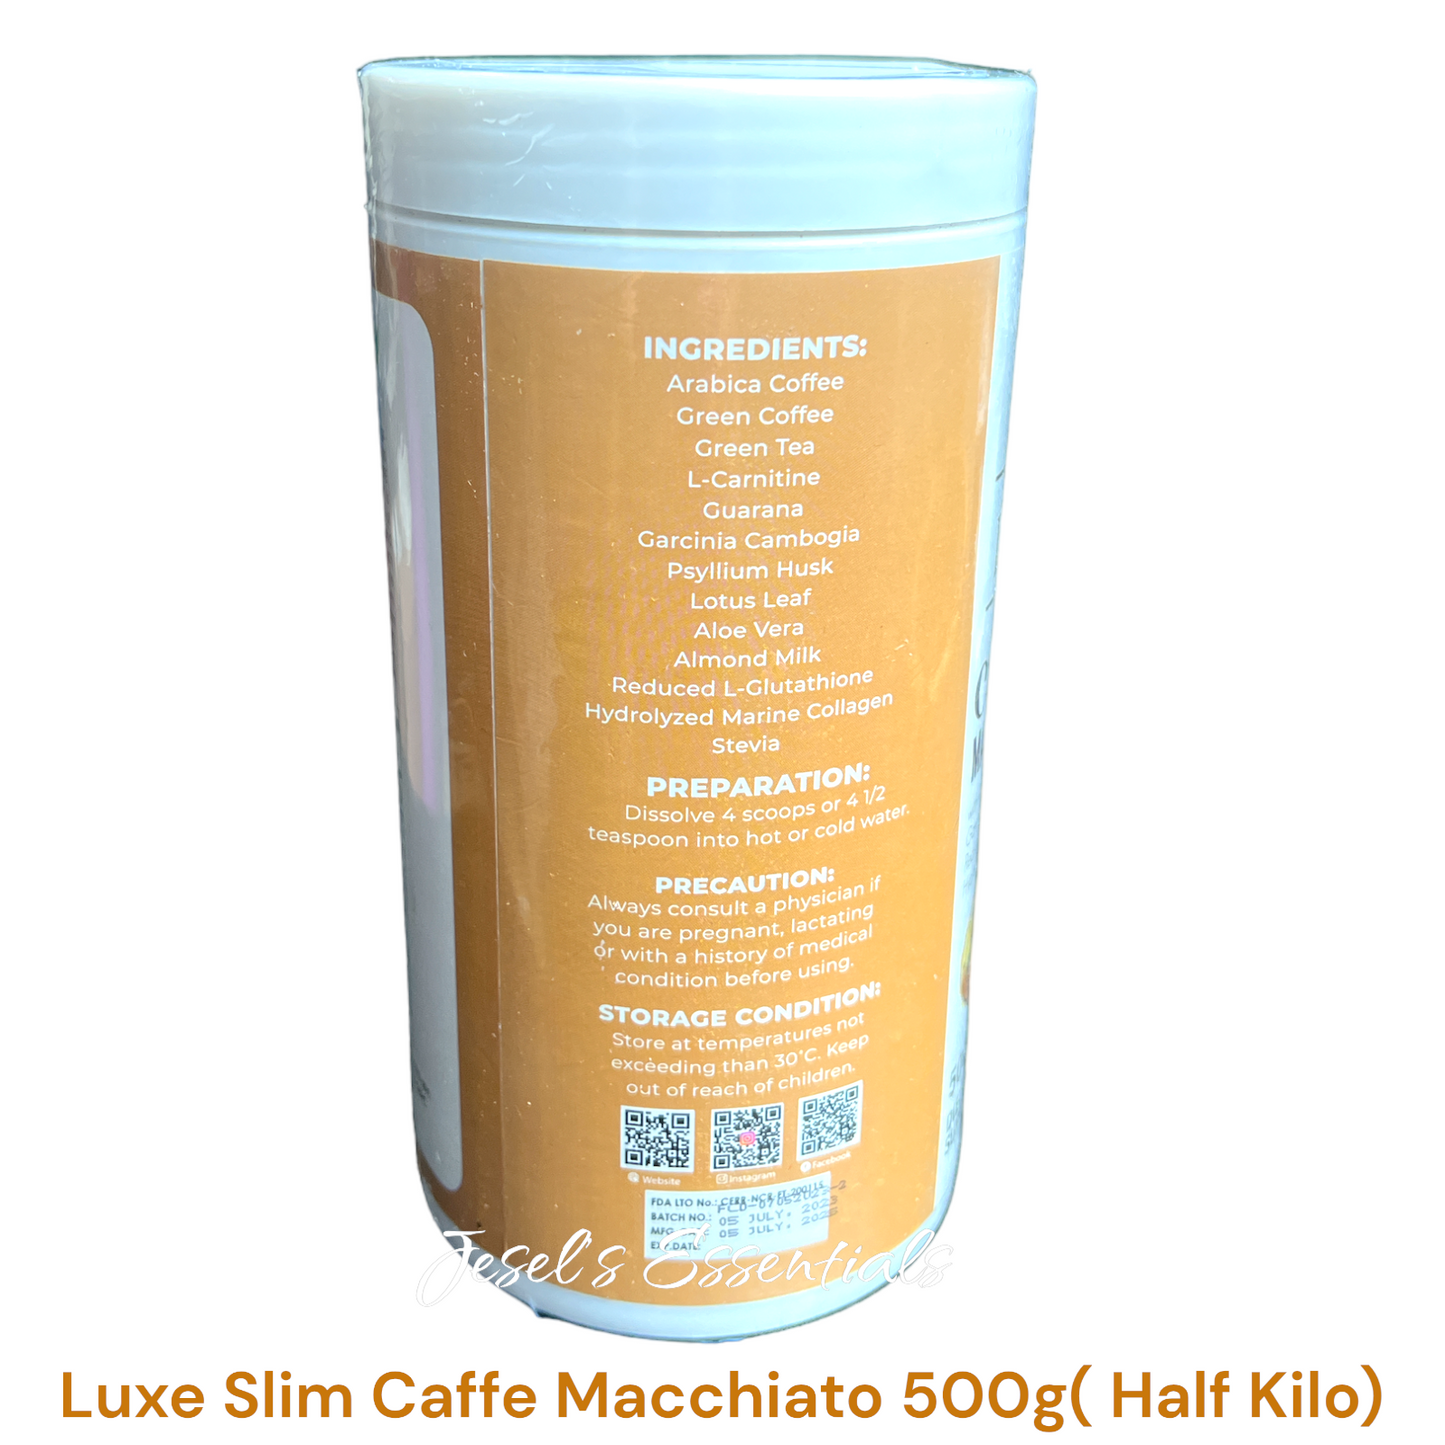 Luxe Slim Caffe Macchiato (Half Kilo)